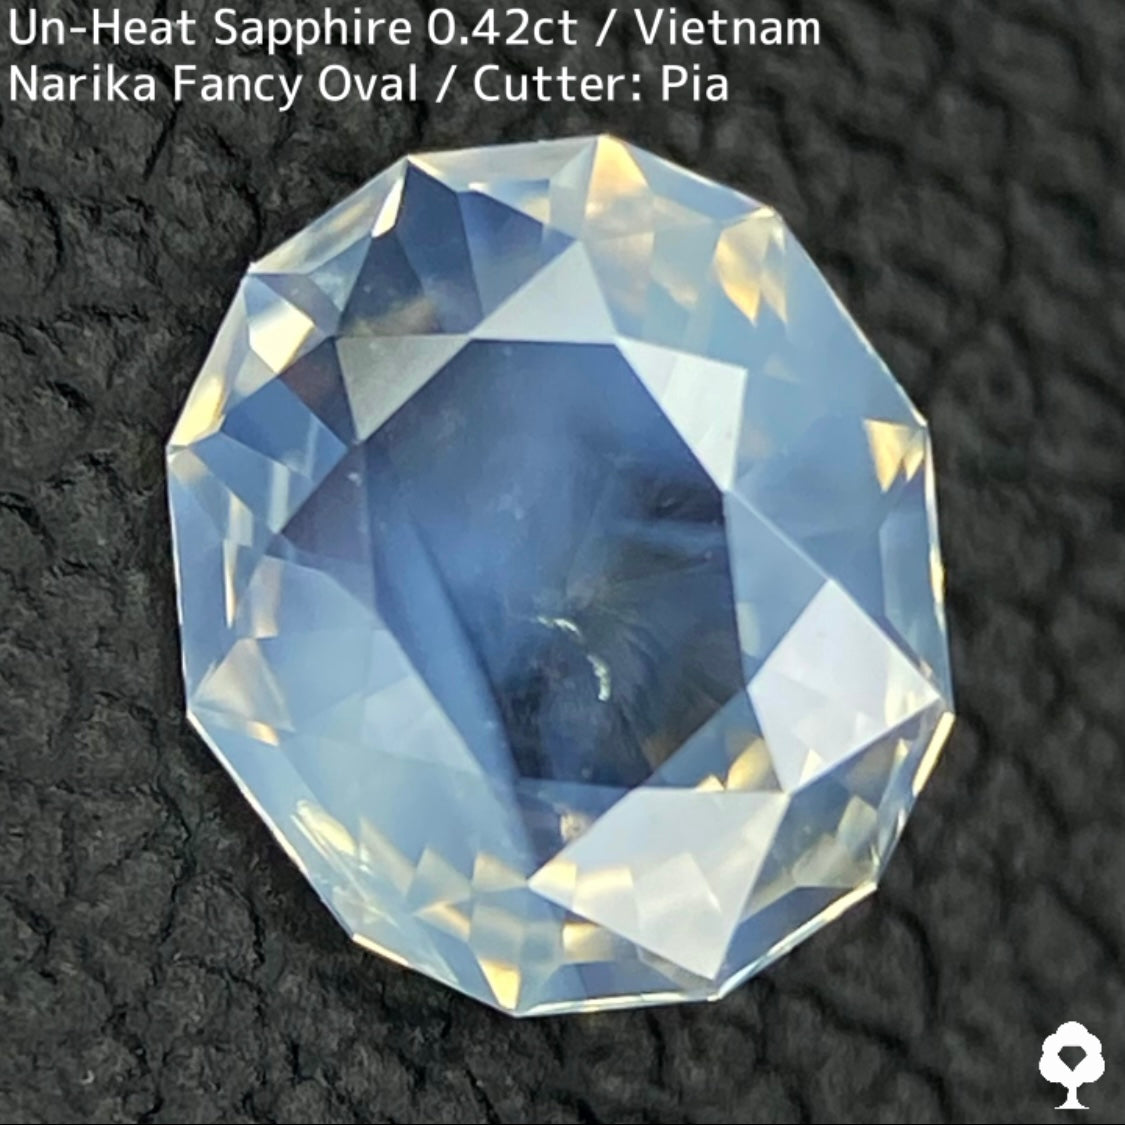 ベトナム産非加熱サファイア0.426ct★レモンゴールドの煌めきが美しい幻想的なシルキーホワイト